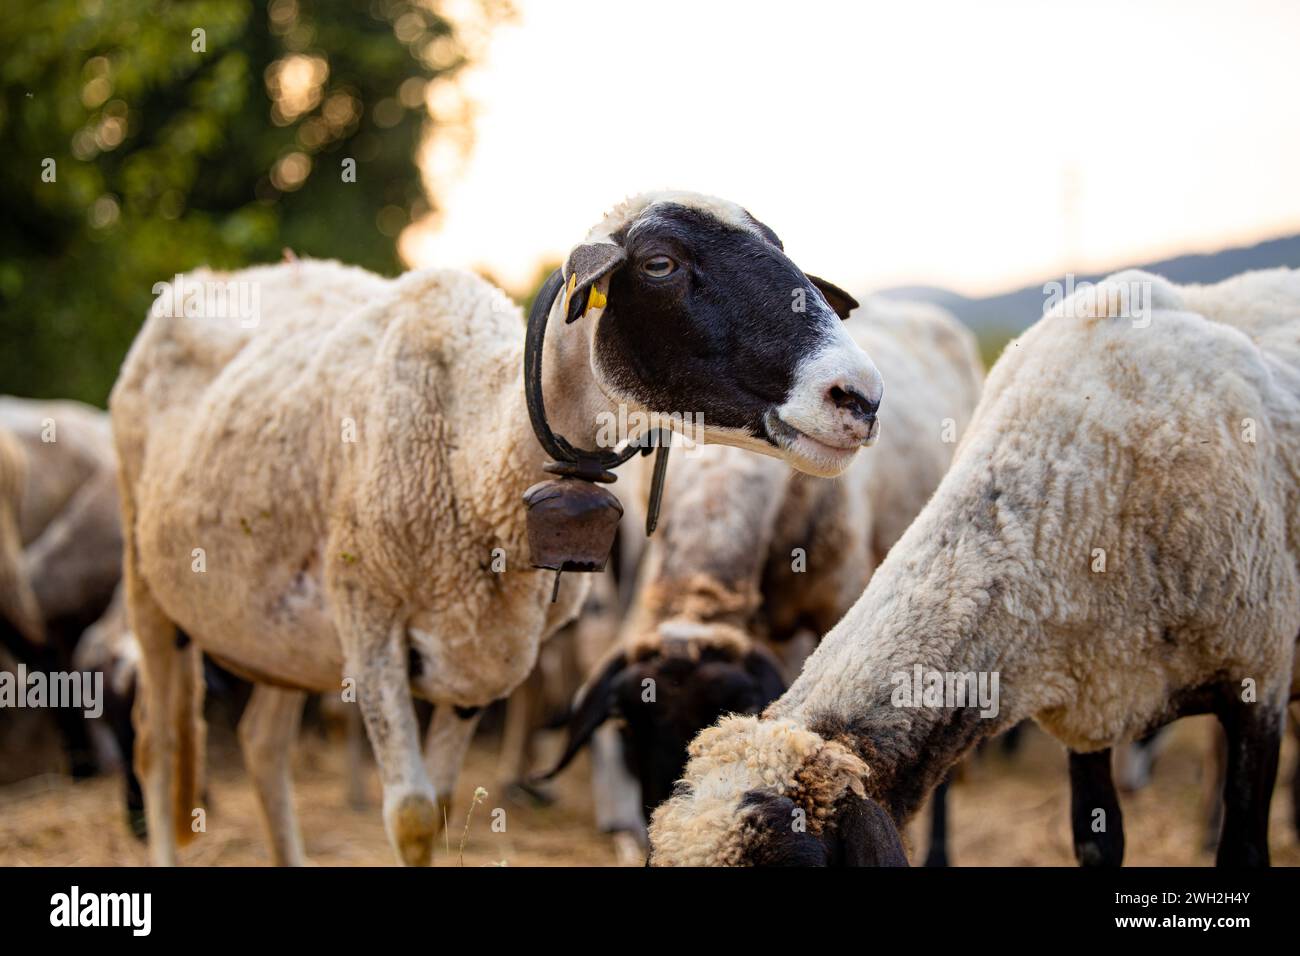 Gruppe von weißen Schafen Nahaufnahmen Porträts auf einem unscharfen Hintergrundfeld von gelbem, trockenem Gras. Ein Schaf mit dunklen Ohren, das nach rechts blickt Stockfoto